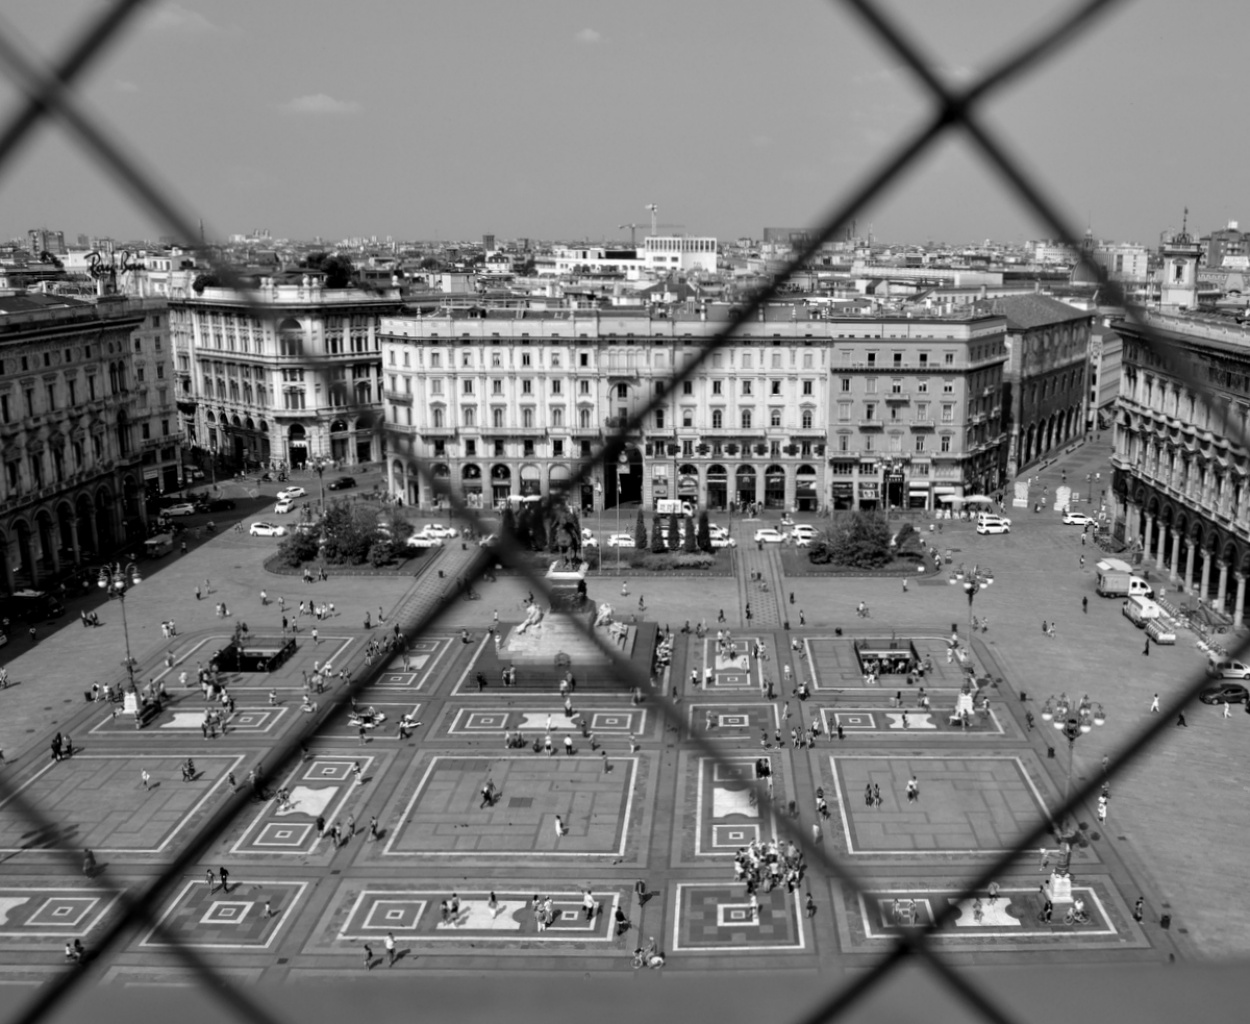 "Vista desde la terraza del Duomo" de Fernanda Ferrari (fer)